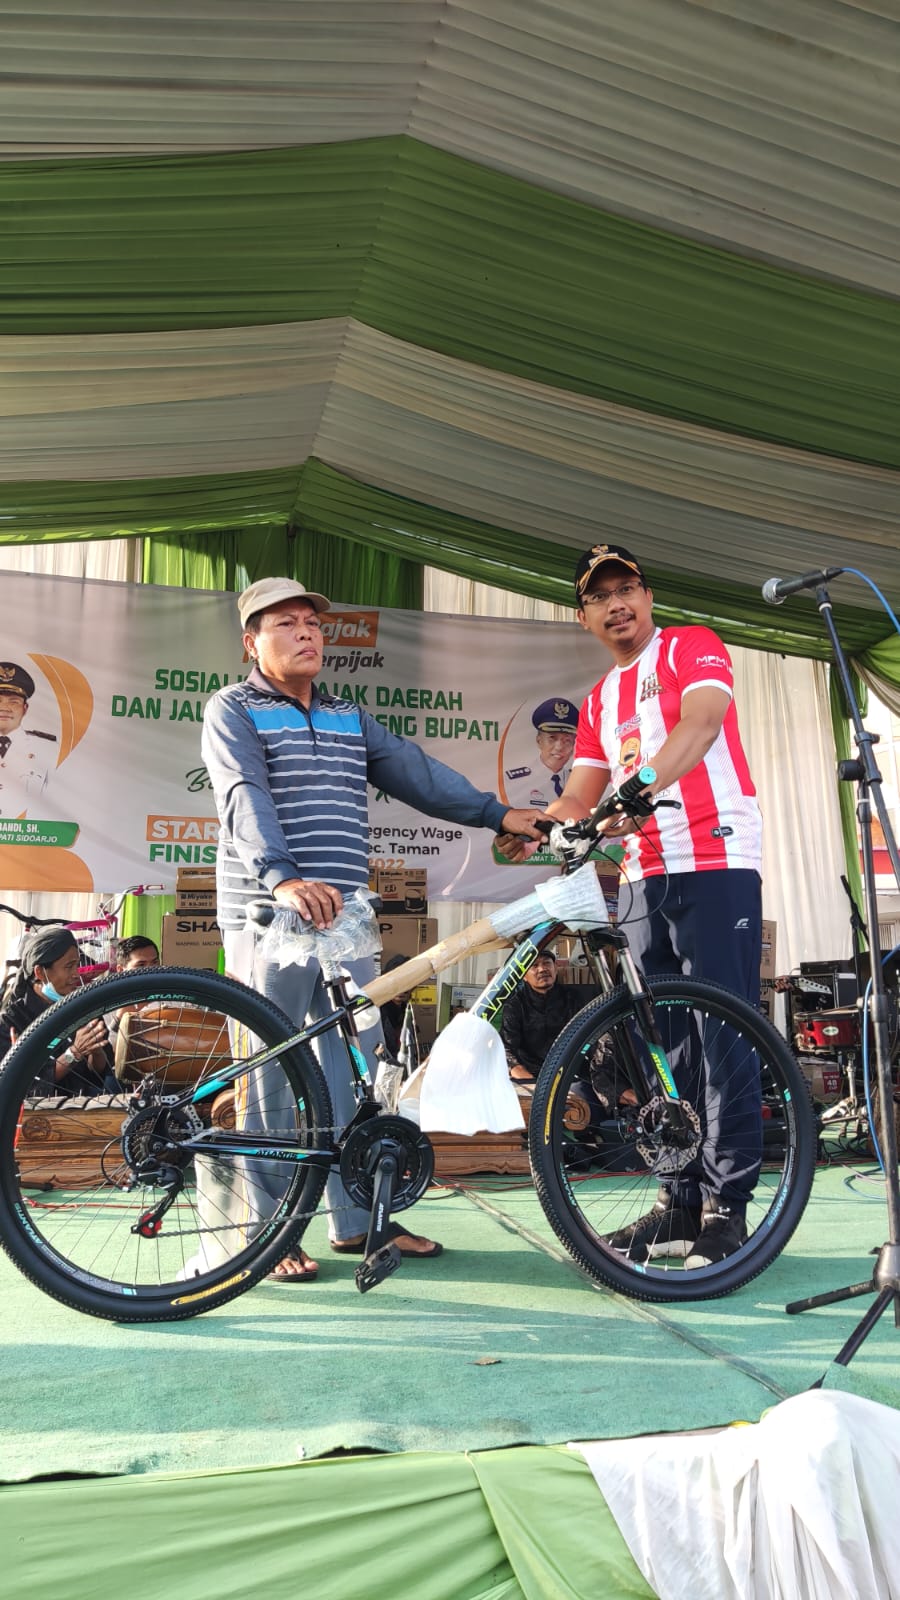 Bupati Sidoarjo Berikan Hadiah Sepeda Gunung Ke Wujud , Orang Pertama di Desa Wage Yang Bayar Pajak PBB